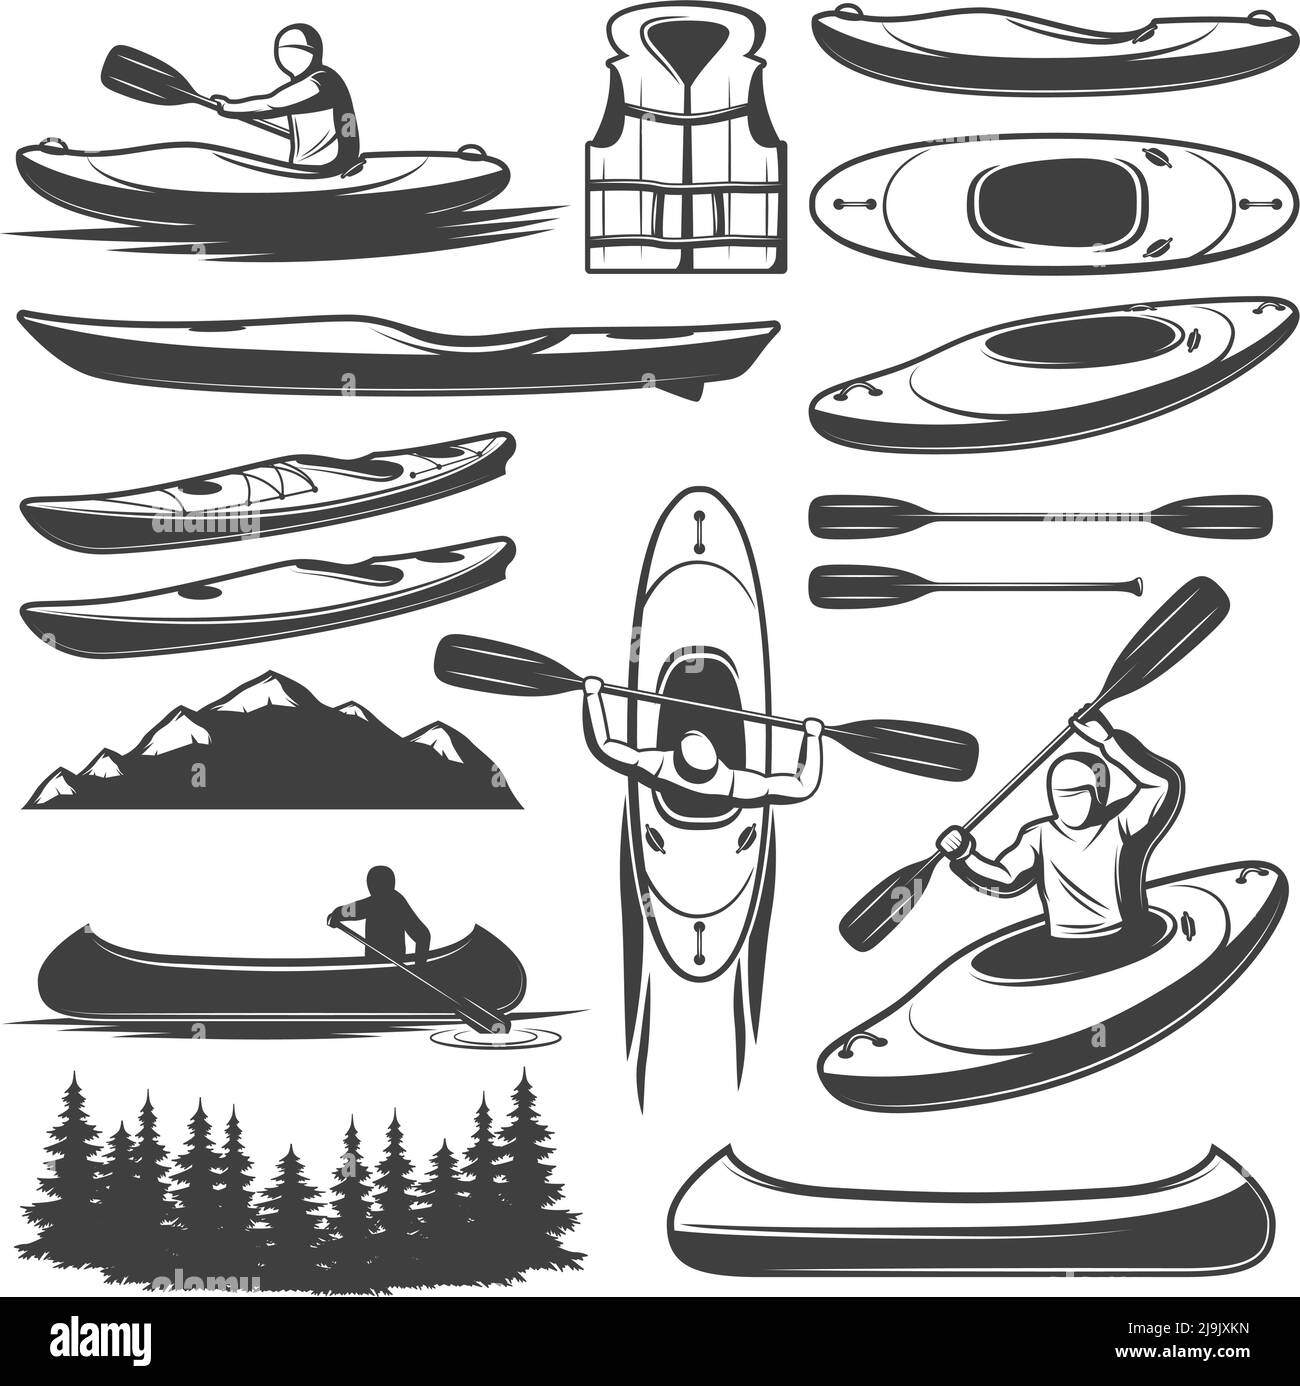 Ensemble d'éléments isolés de canoë-kayak monochrome avec des images vintage illustration vectorielle de nombre de bateaux de rang et d'aviron Illustration de Vecteur